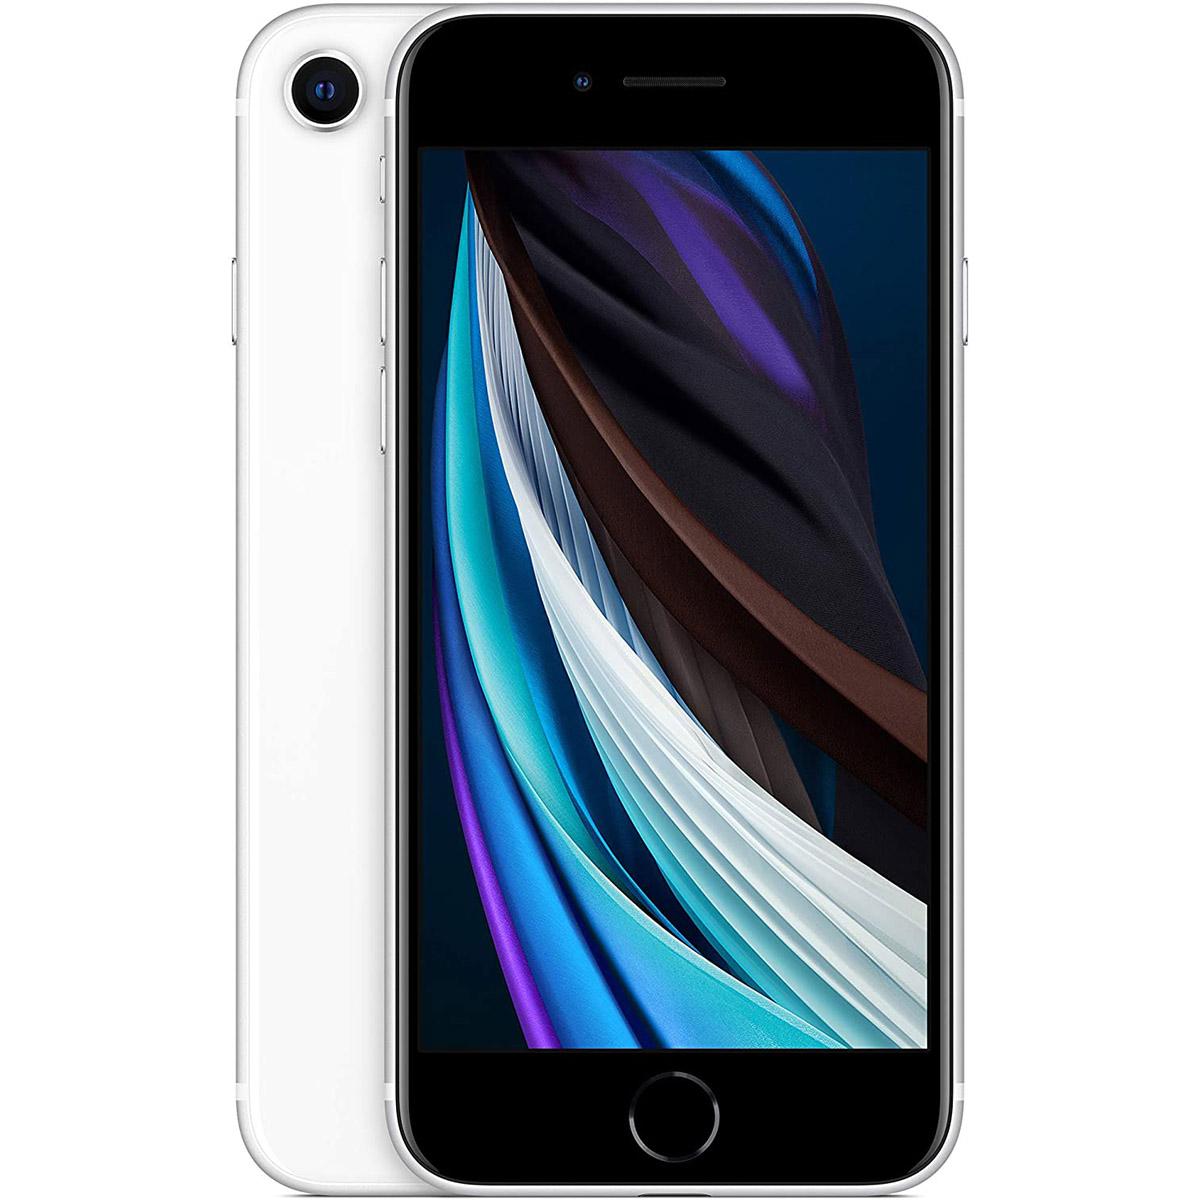 Apple iPhone SE 2nd Gen 64GB Unlocked Smartphone Deals